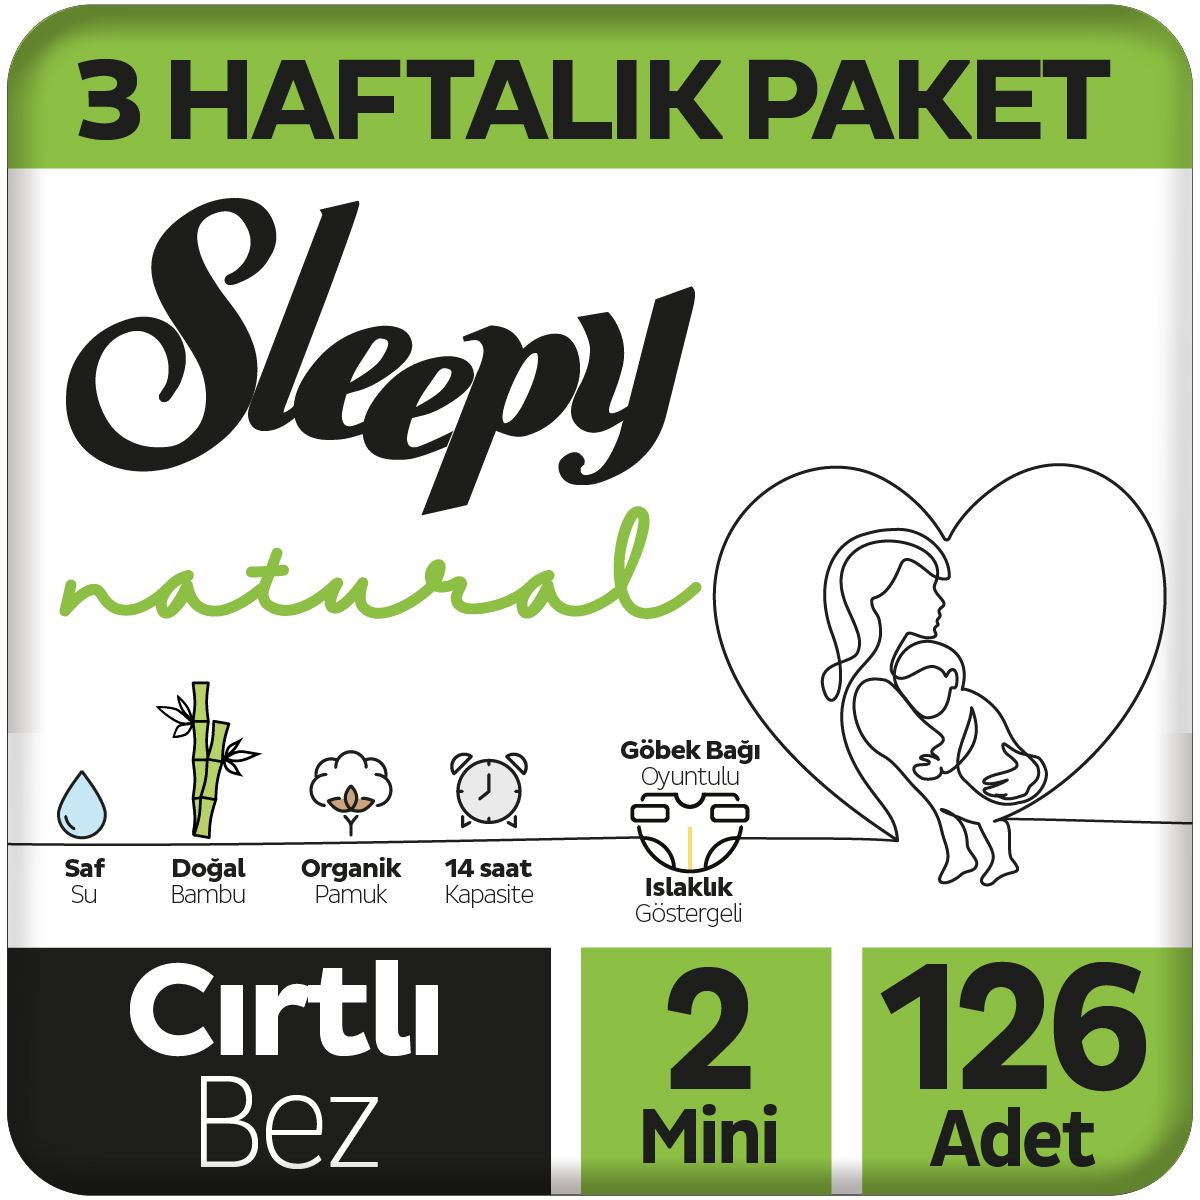 Sleepy Natural 3 Haftalık Paket Bebek Bezi 2 Numara Mini 126 Adet